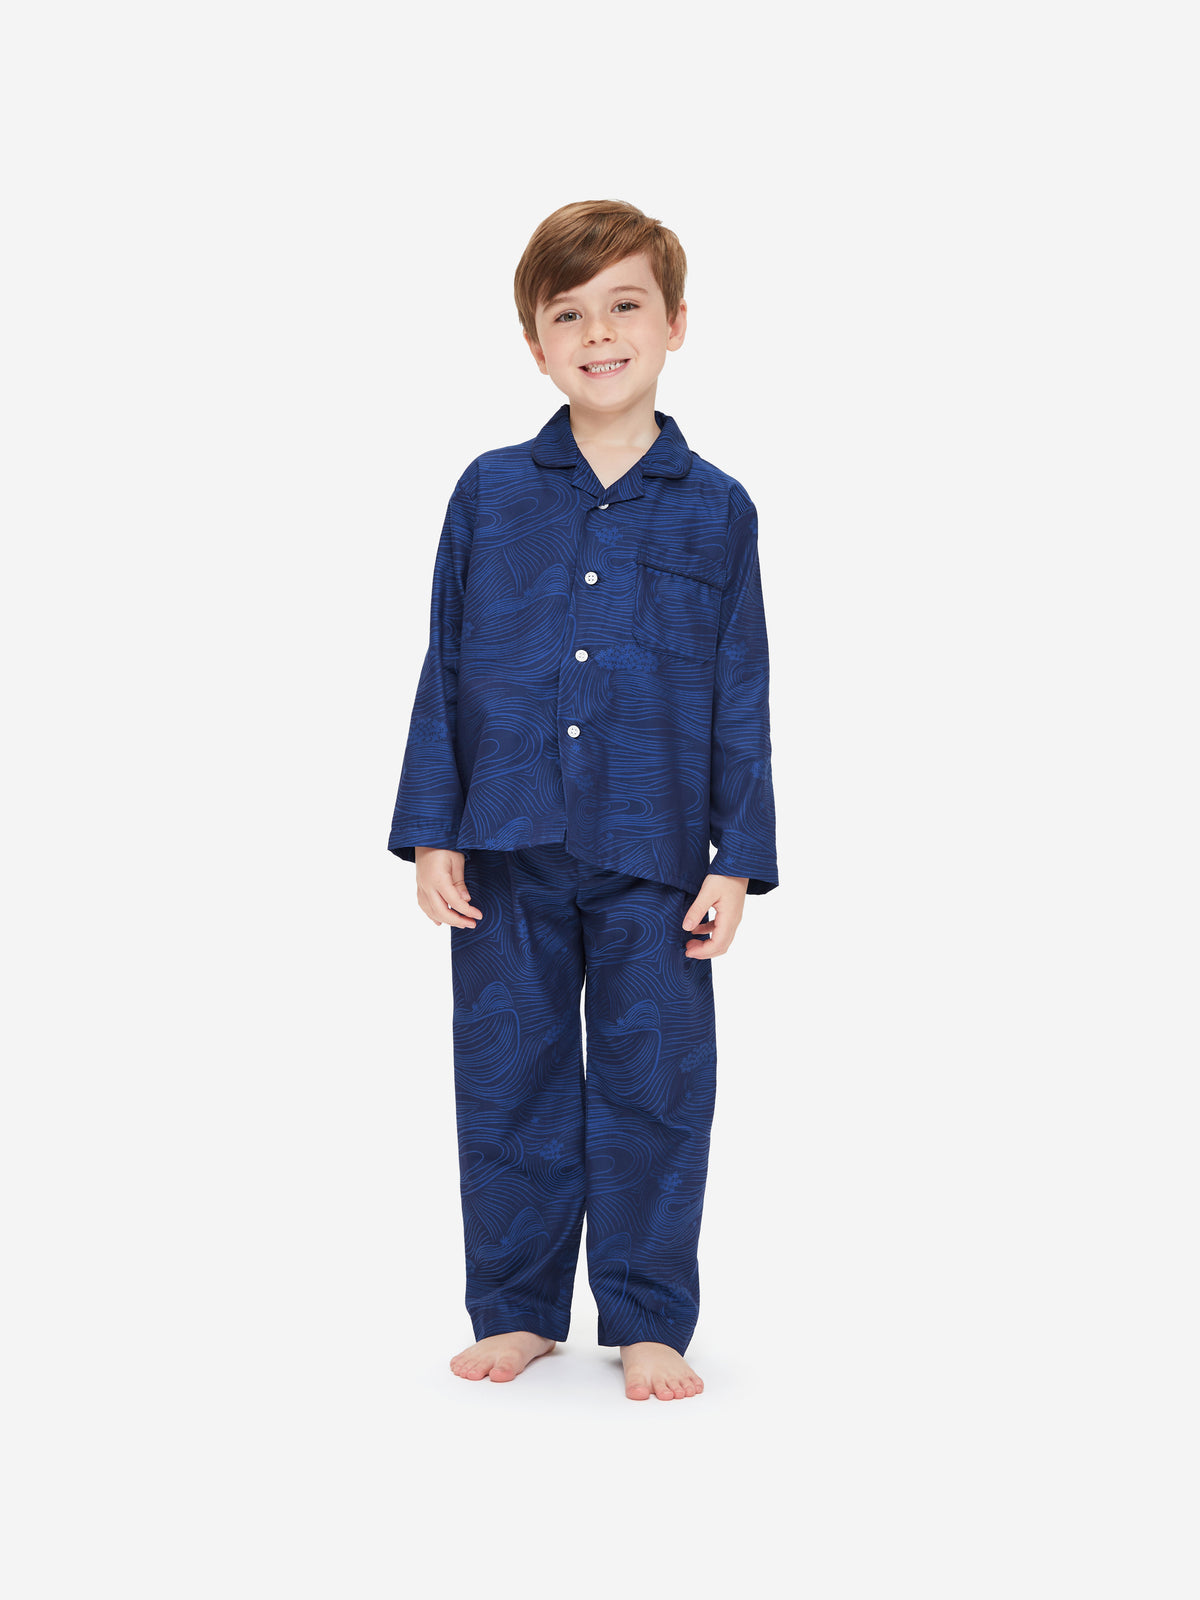 Kids' Pyjamas Paris 22 Cotton Jacquard Navy